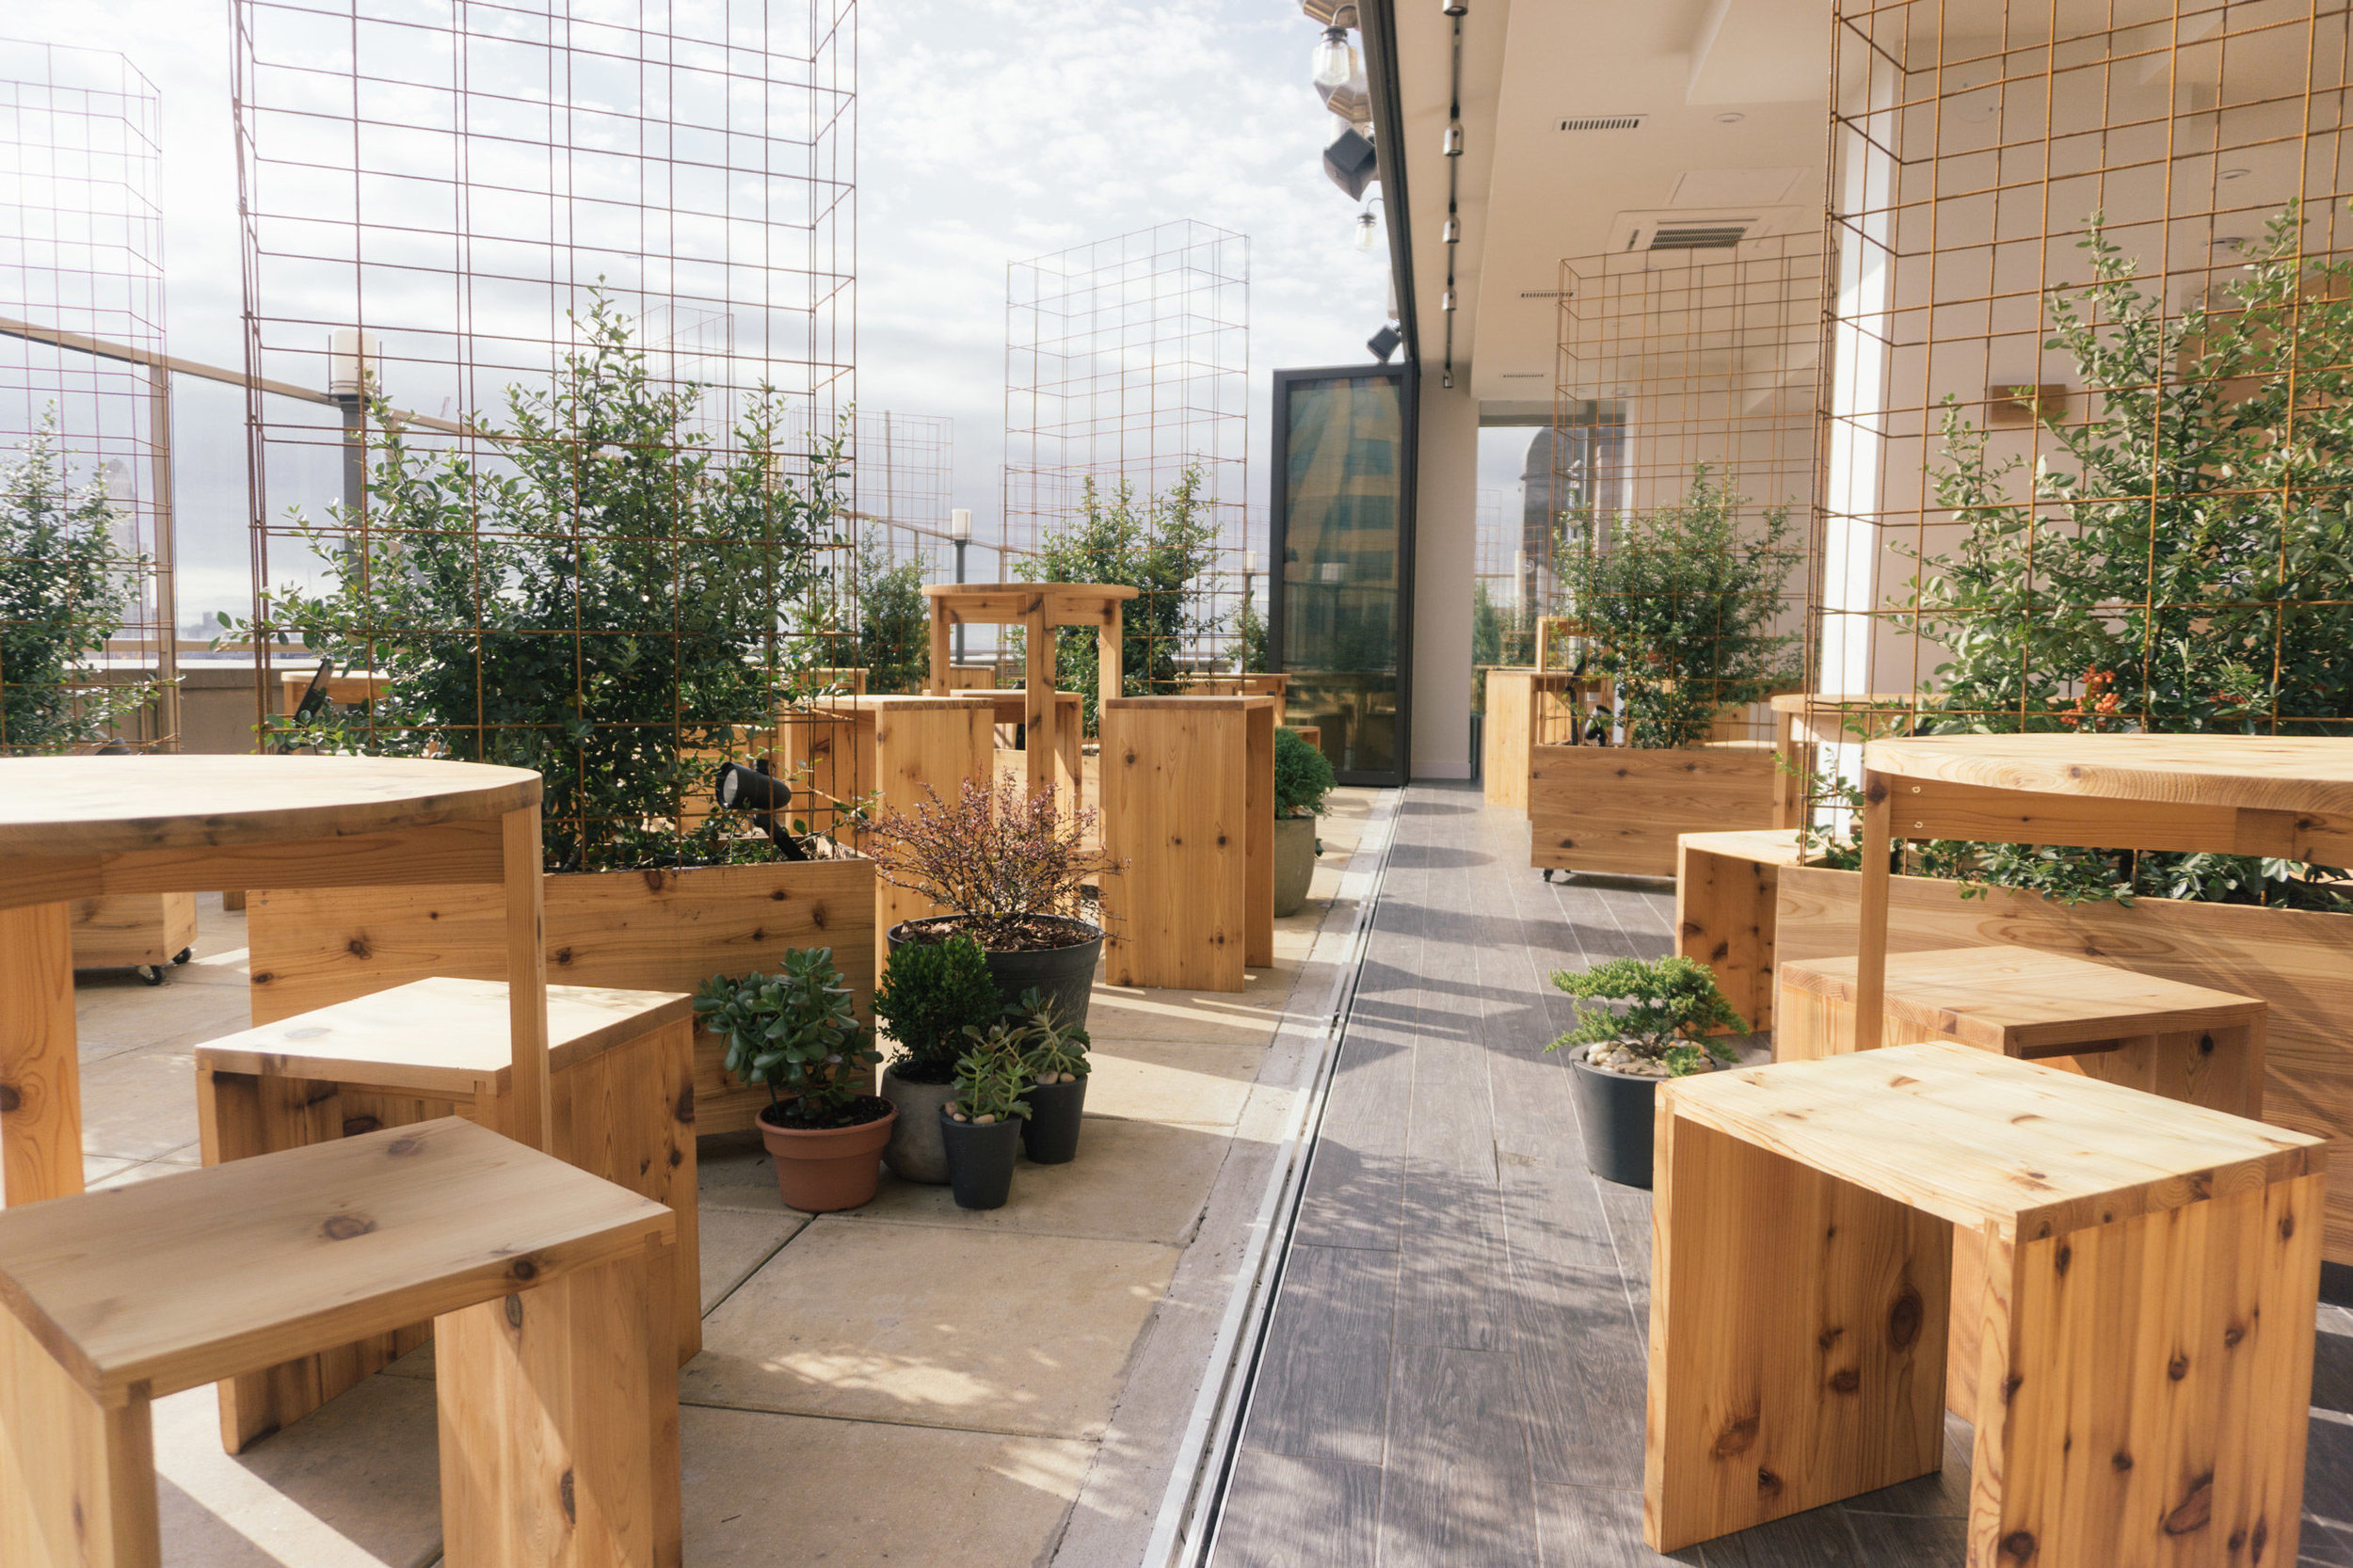 Kimoto Rooftop Beer Garden Isometric Studio